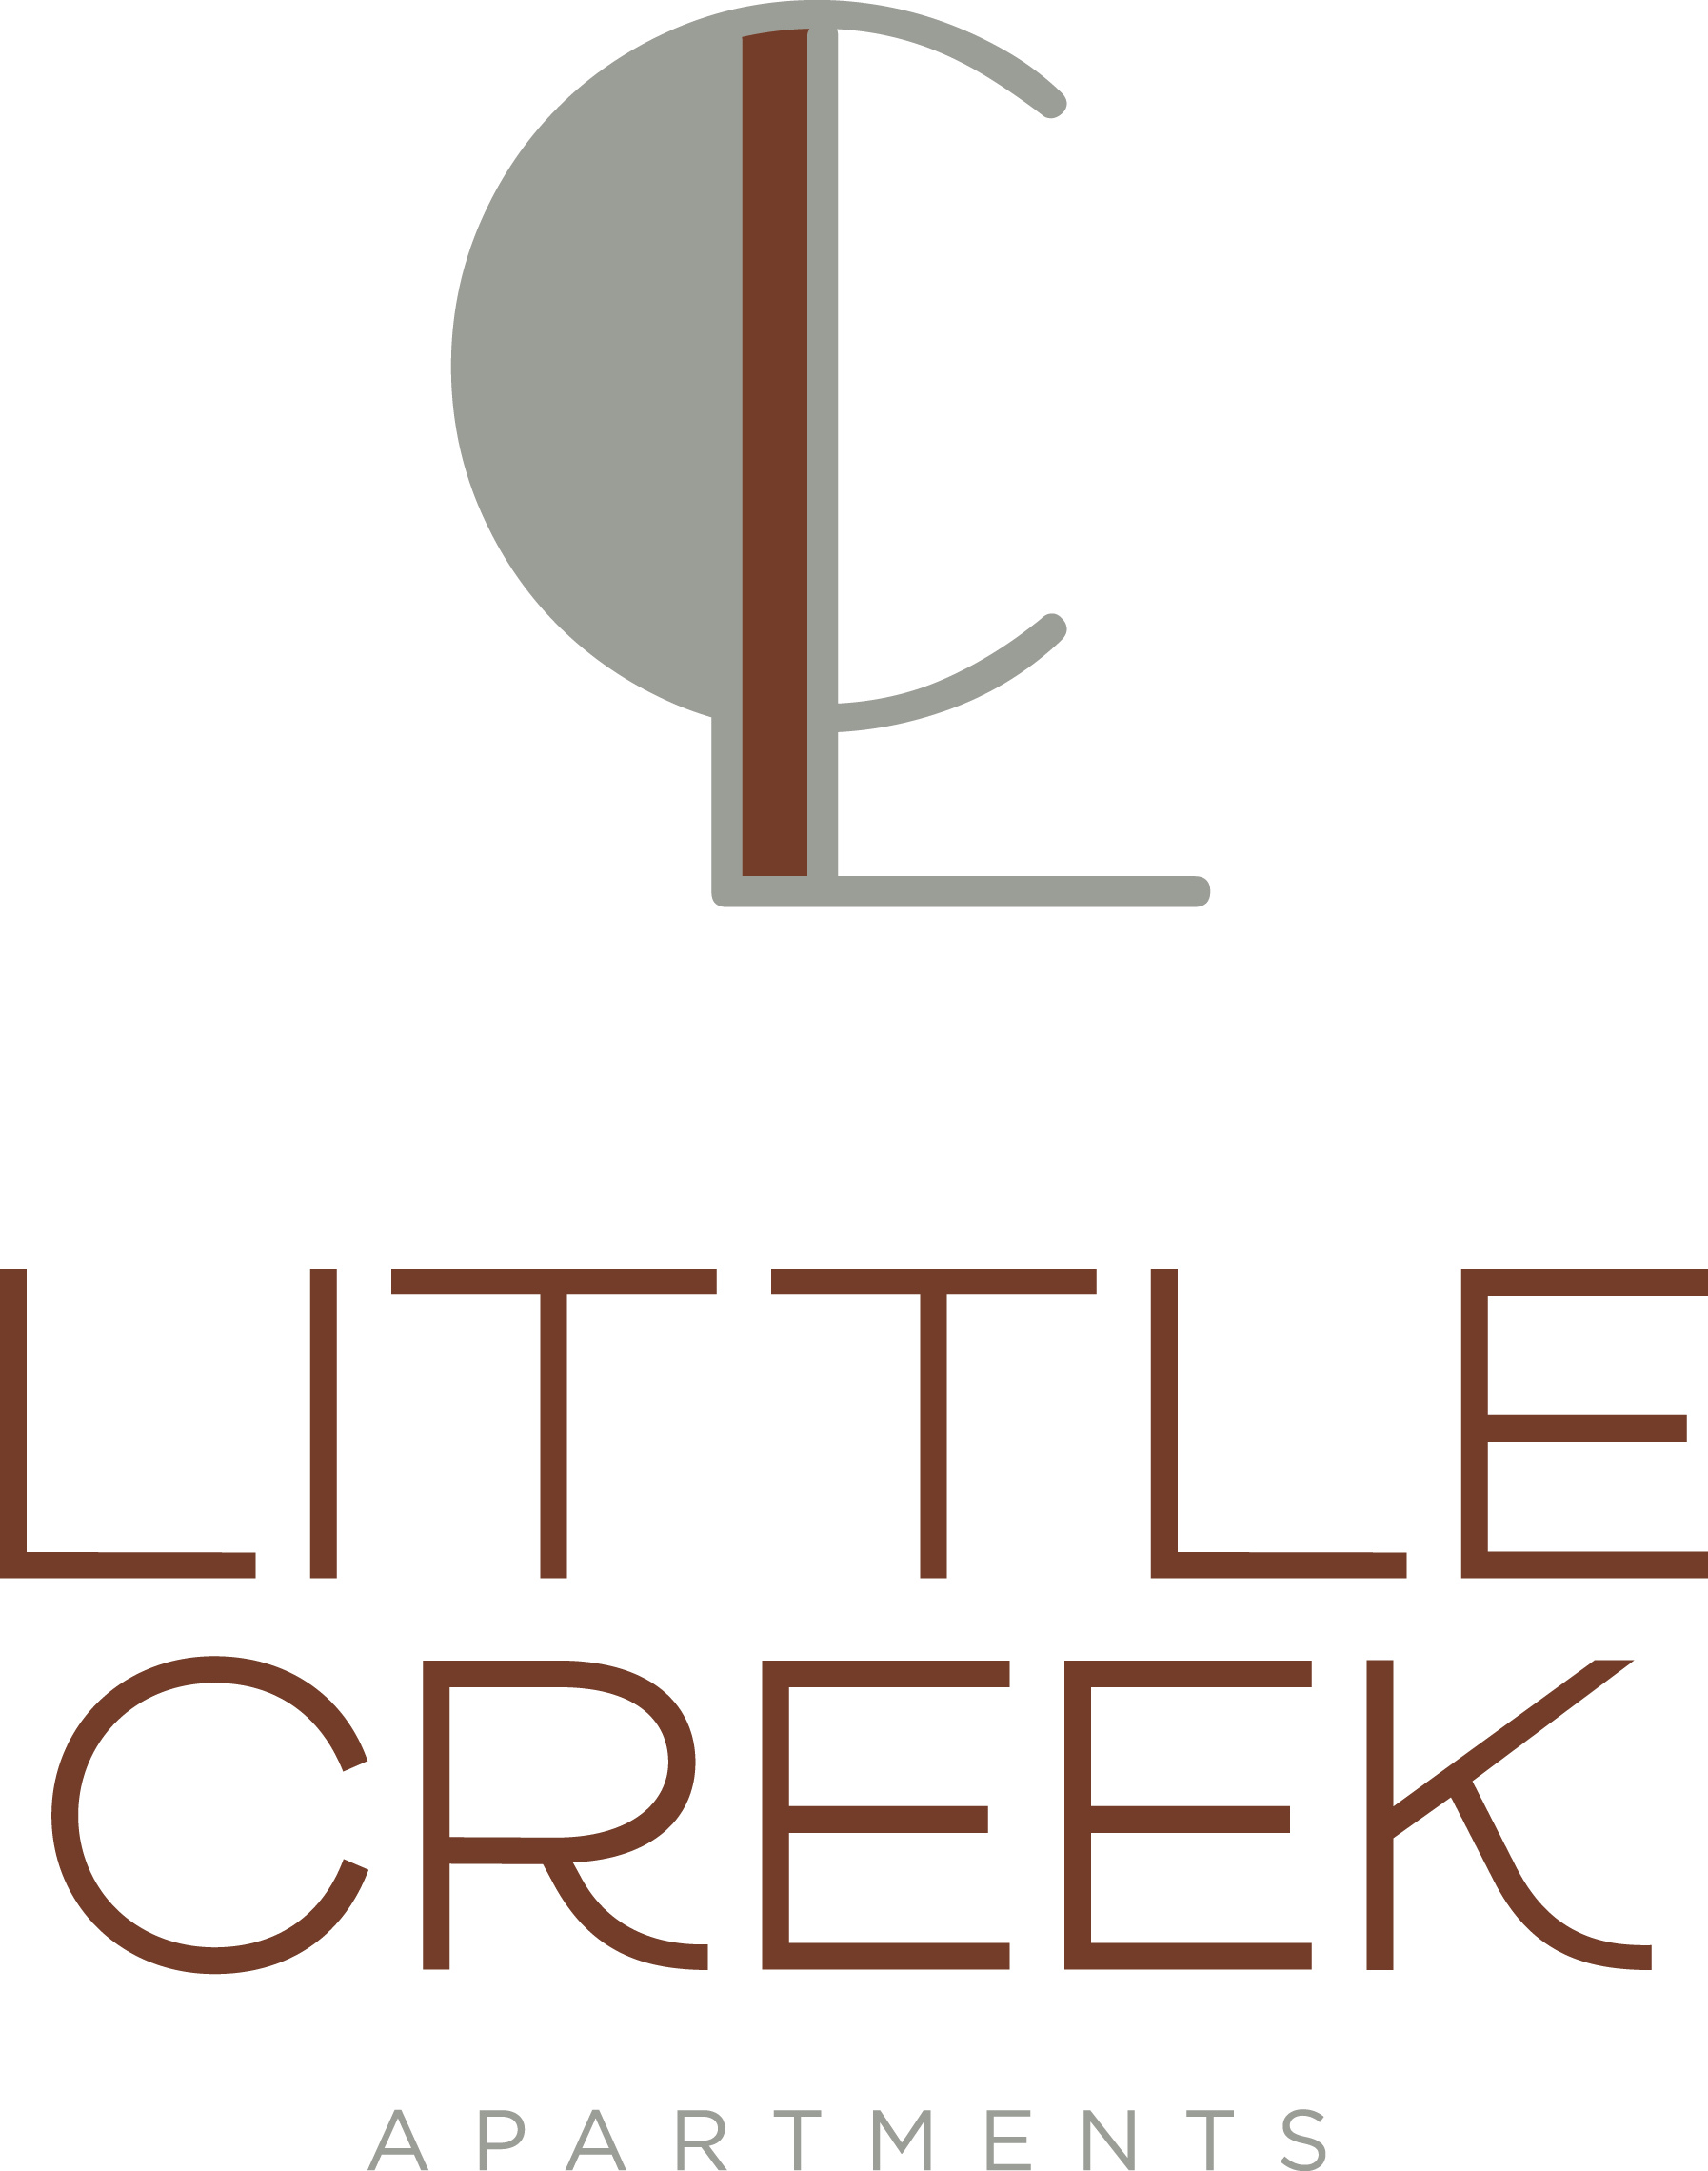 Little Creek